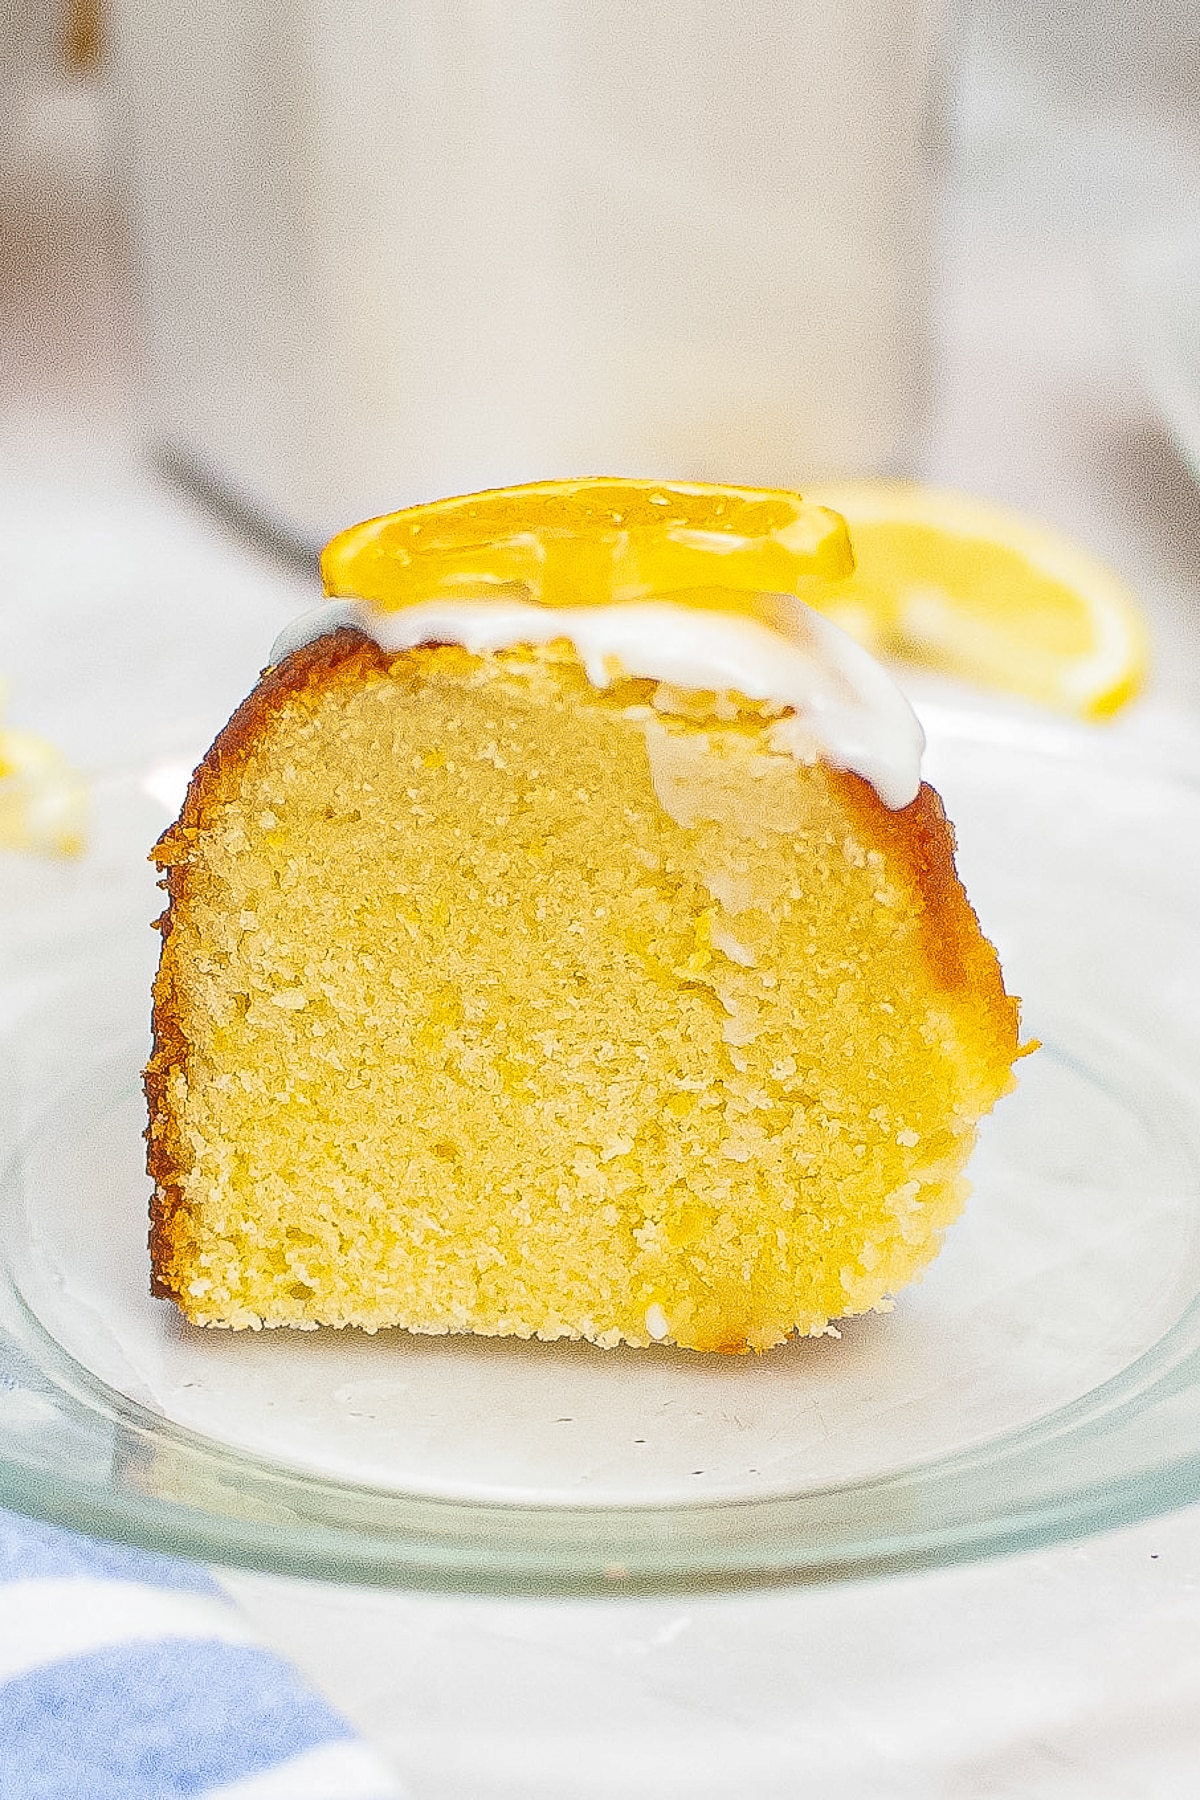 slice of Lemon Bundt Cake on a glass plate